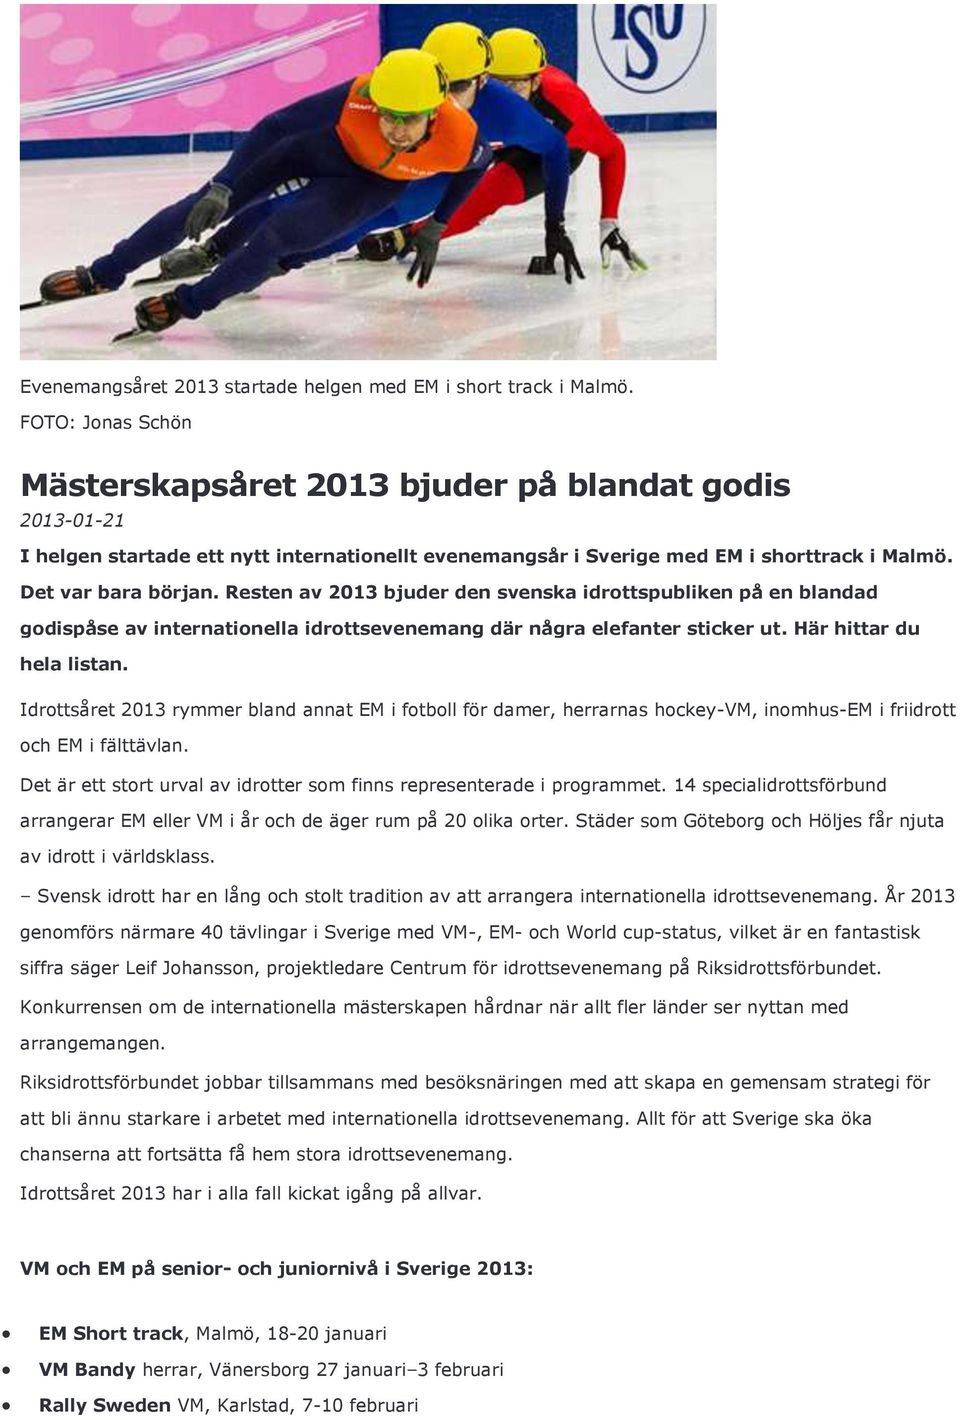 Resten av 2013 bjuder den svenska idrottspubliken på en blandad godispåse av internationella idrottsevenemang där några elefanter sticker ut. Här hittar du hela listan.